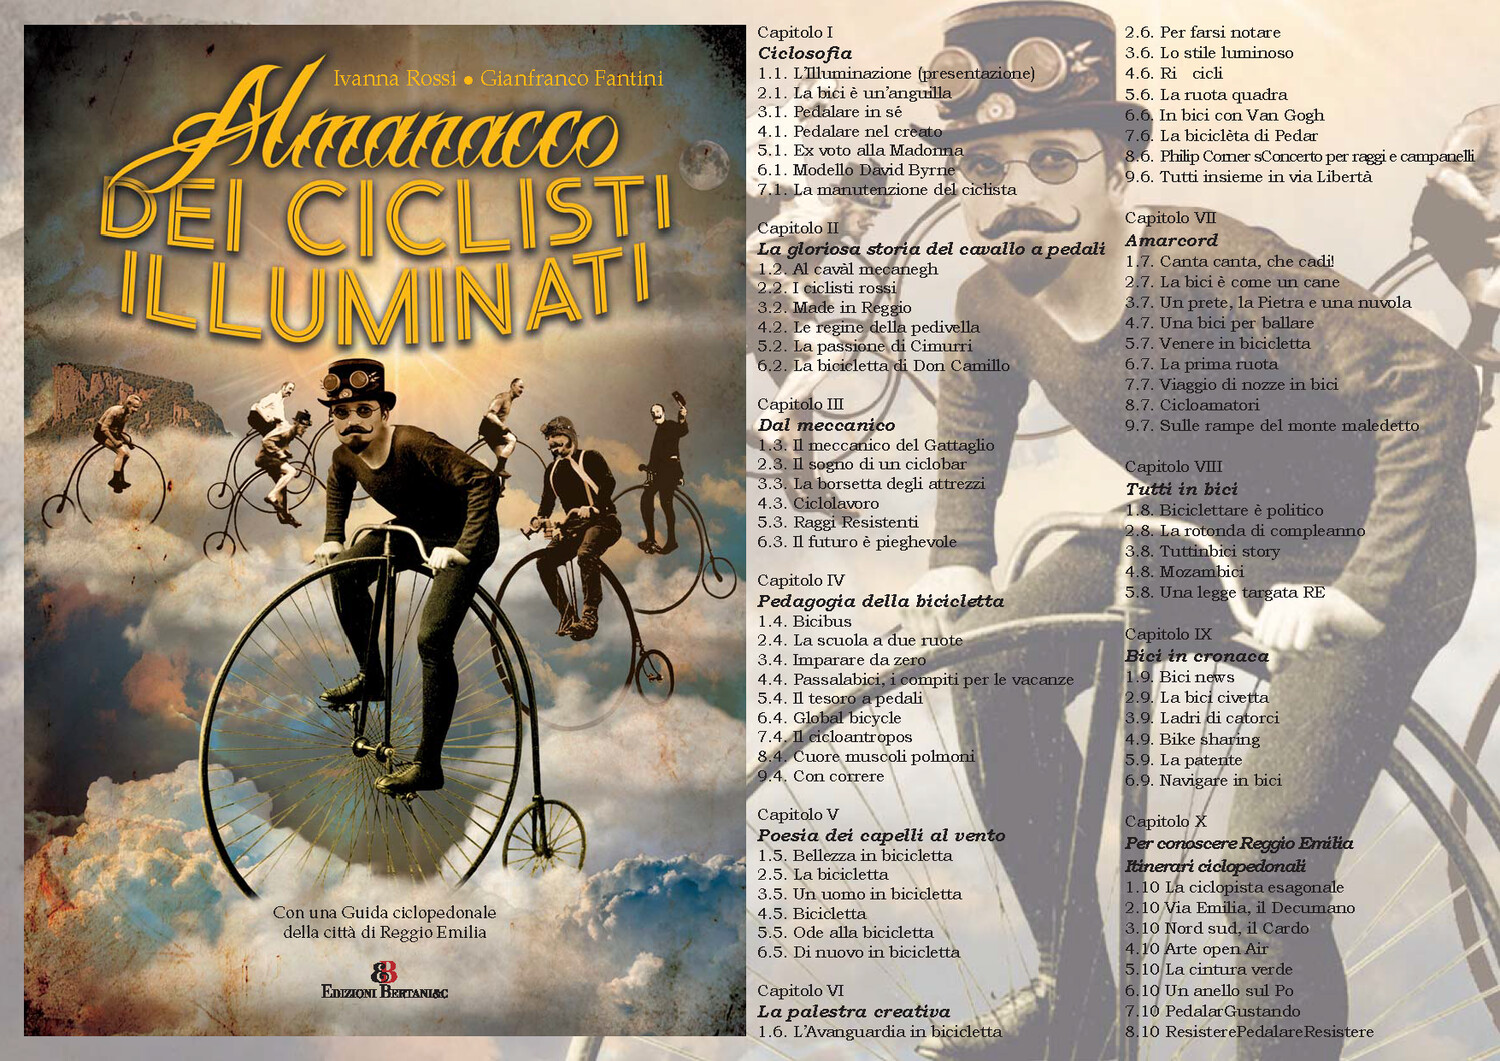 Almanacco dei Ciclisti Illuminati